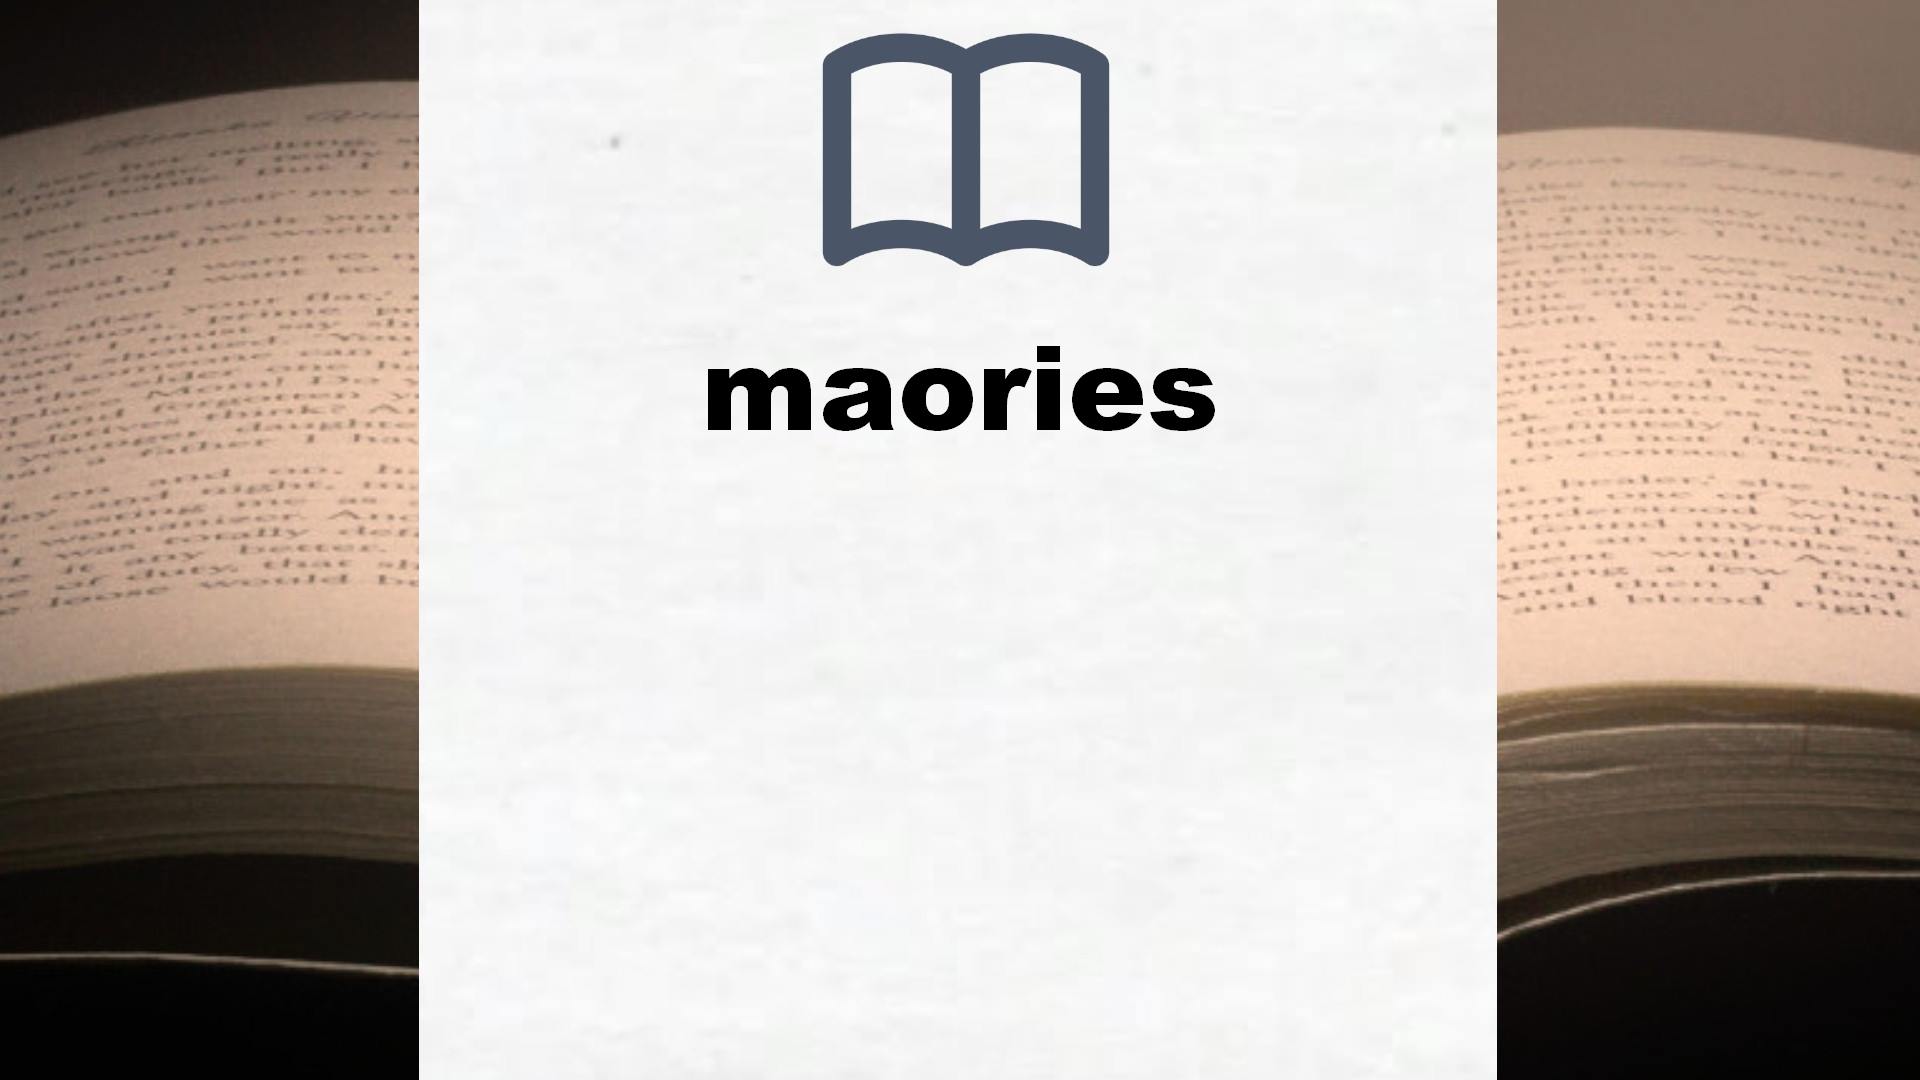 Libros sobre maories